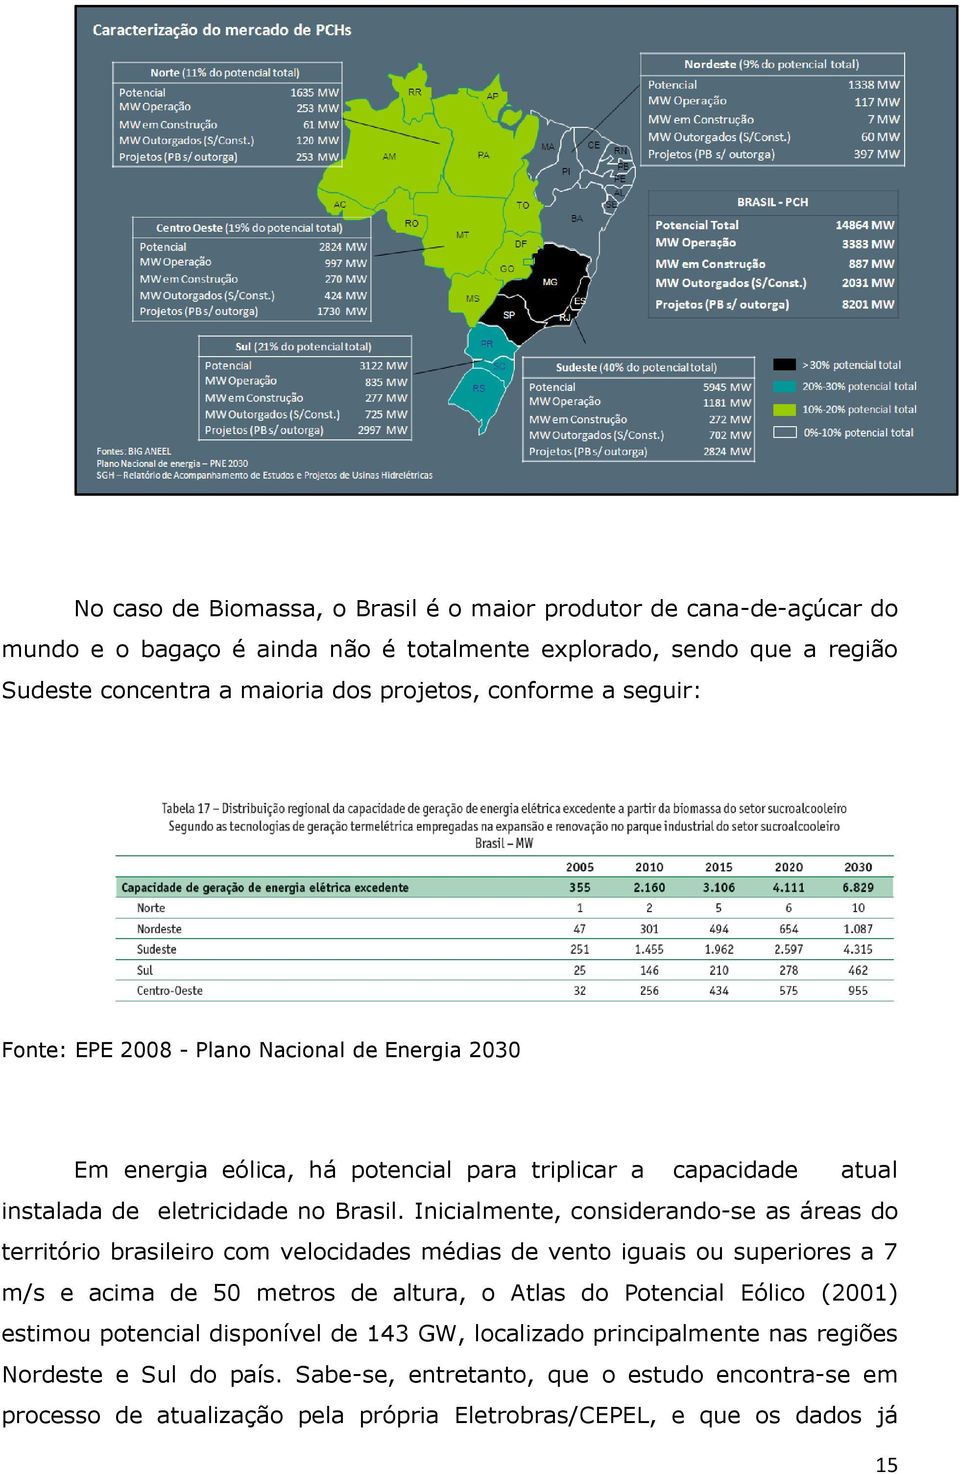 Inicialmente, considerando-se as áreas do território brasileiro com velocidades médias de vento iguais ou superiores a 7 m/s e acima de 50 metros de altura, o Atlas do Potencial Eólico (2001)